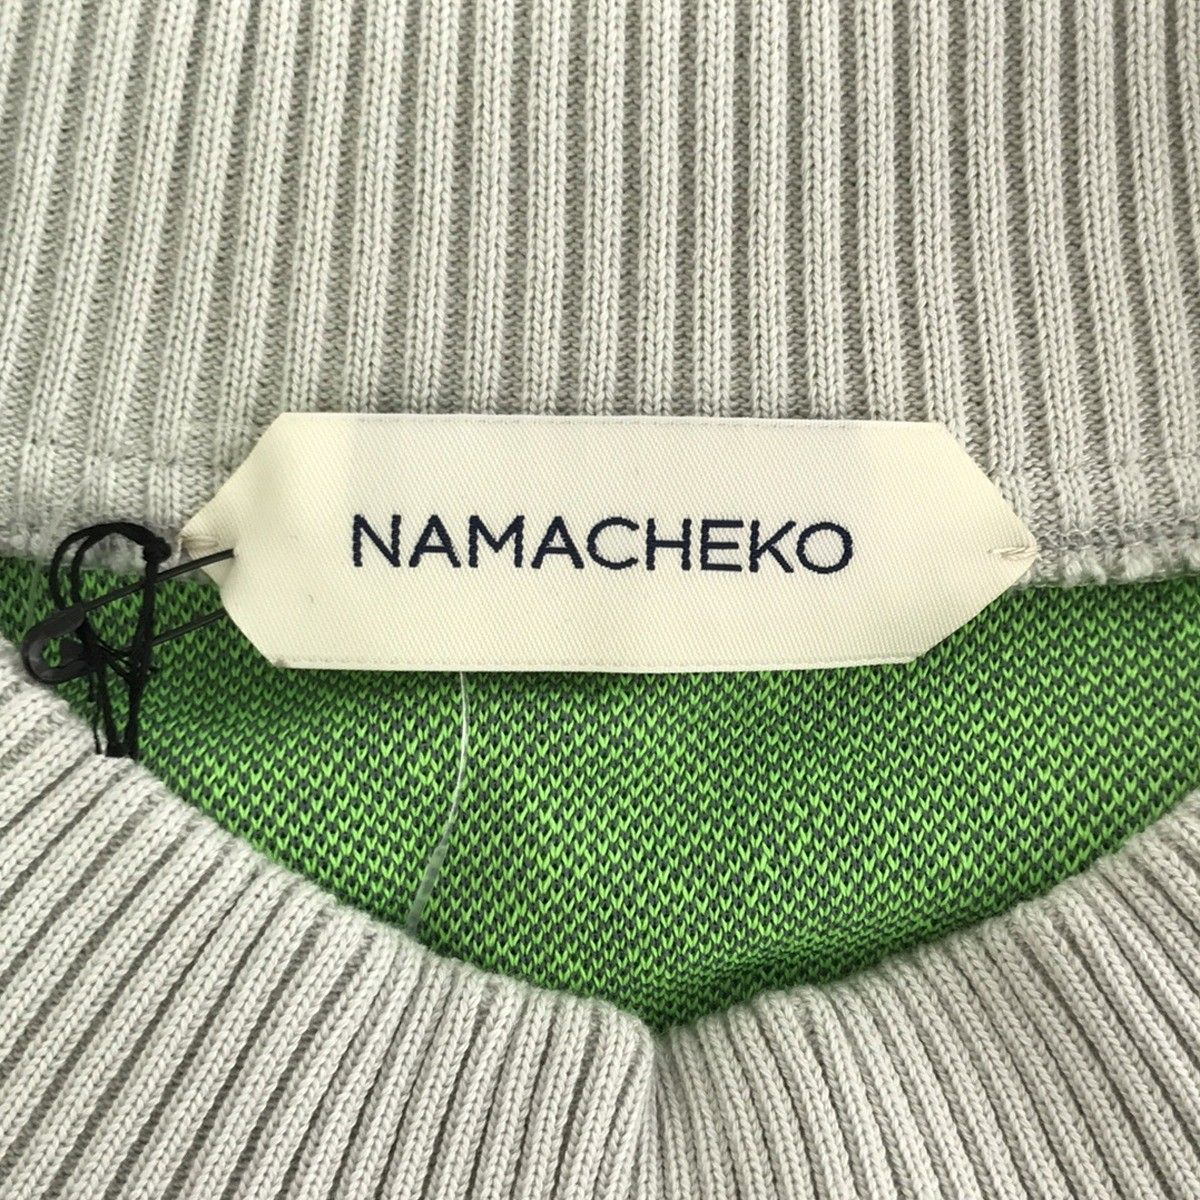 NAMACHEKO ナマチェコ 20SS OONGA SHIRT デザインニットトップス グリーン×マルチカラー M - メルカリ